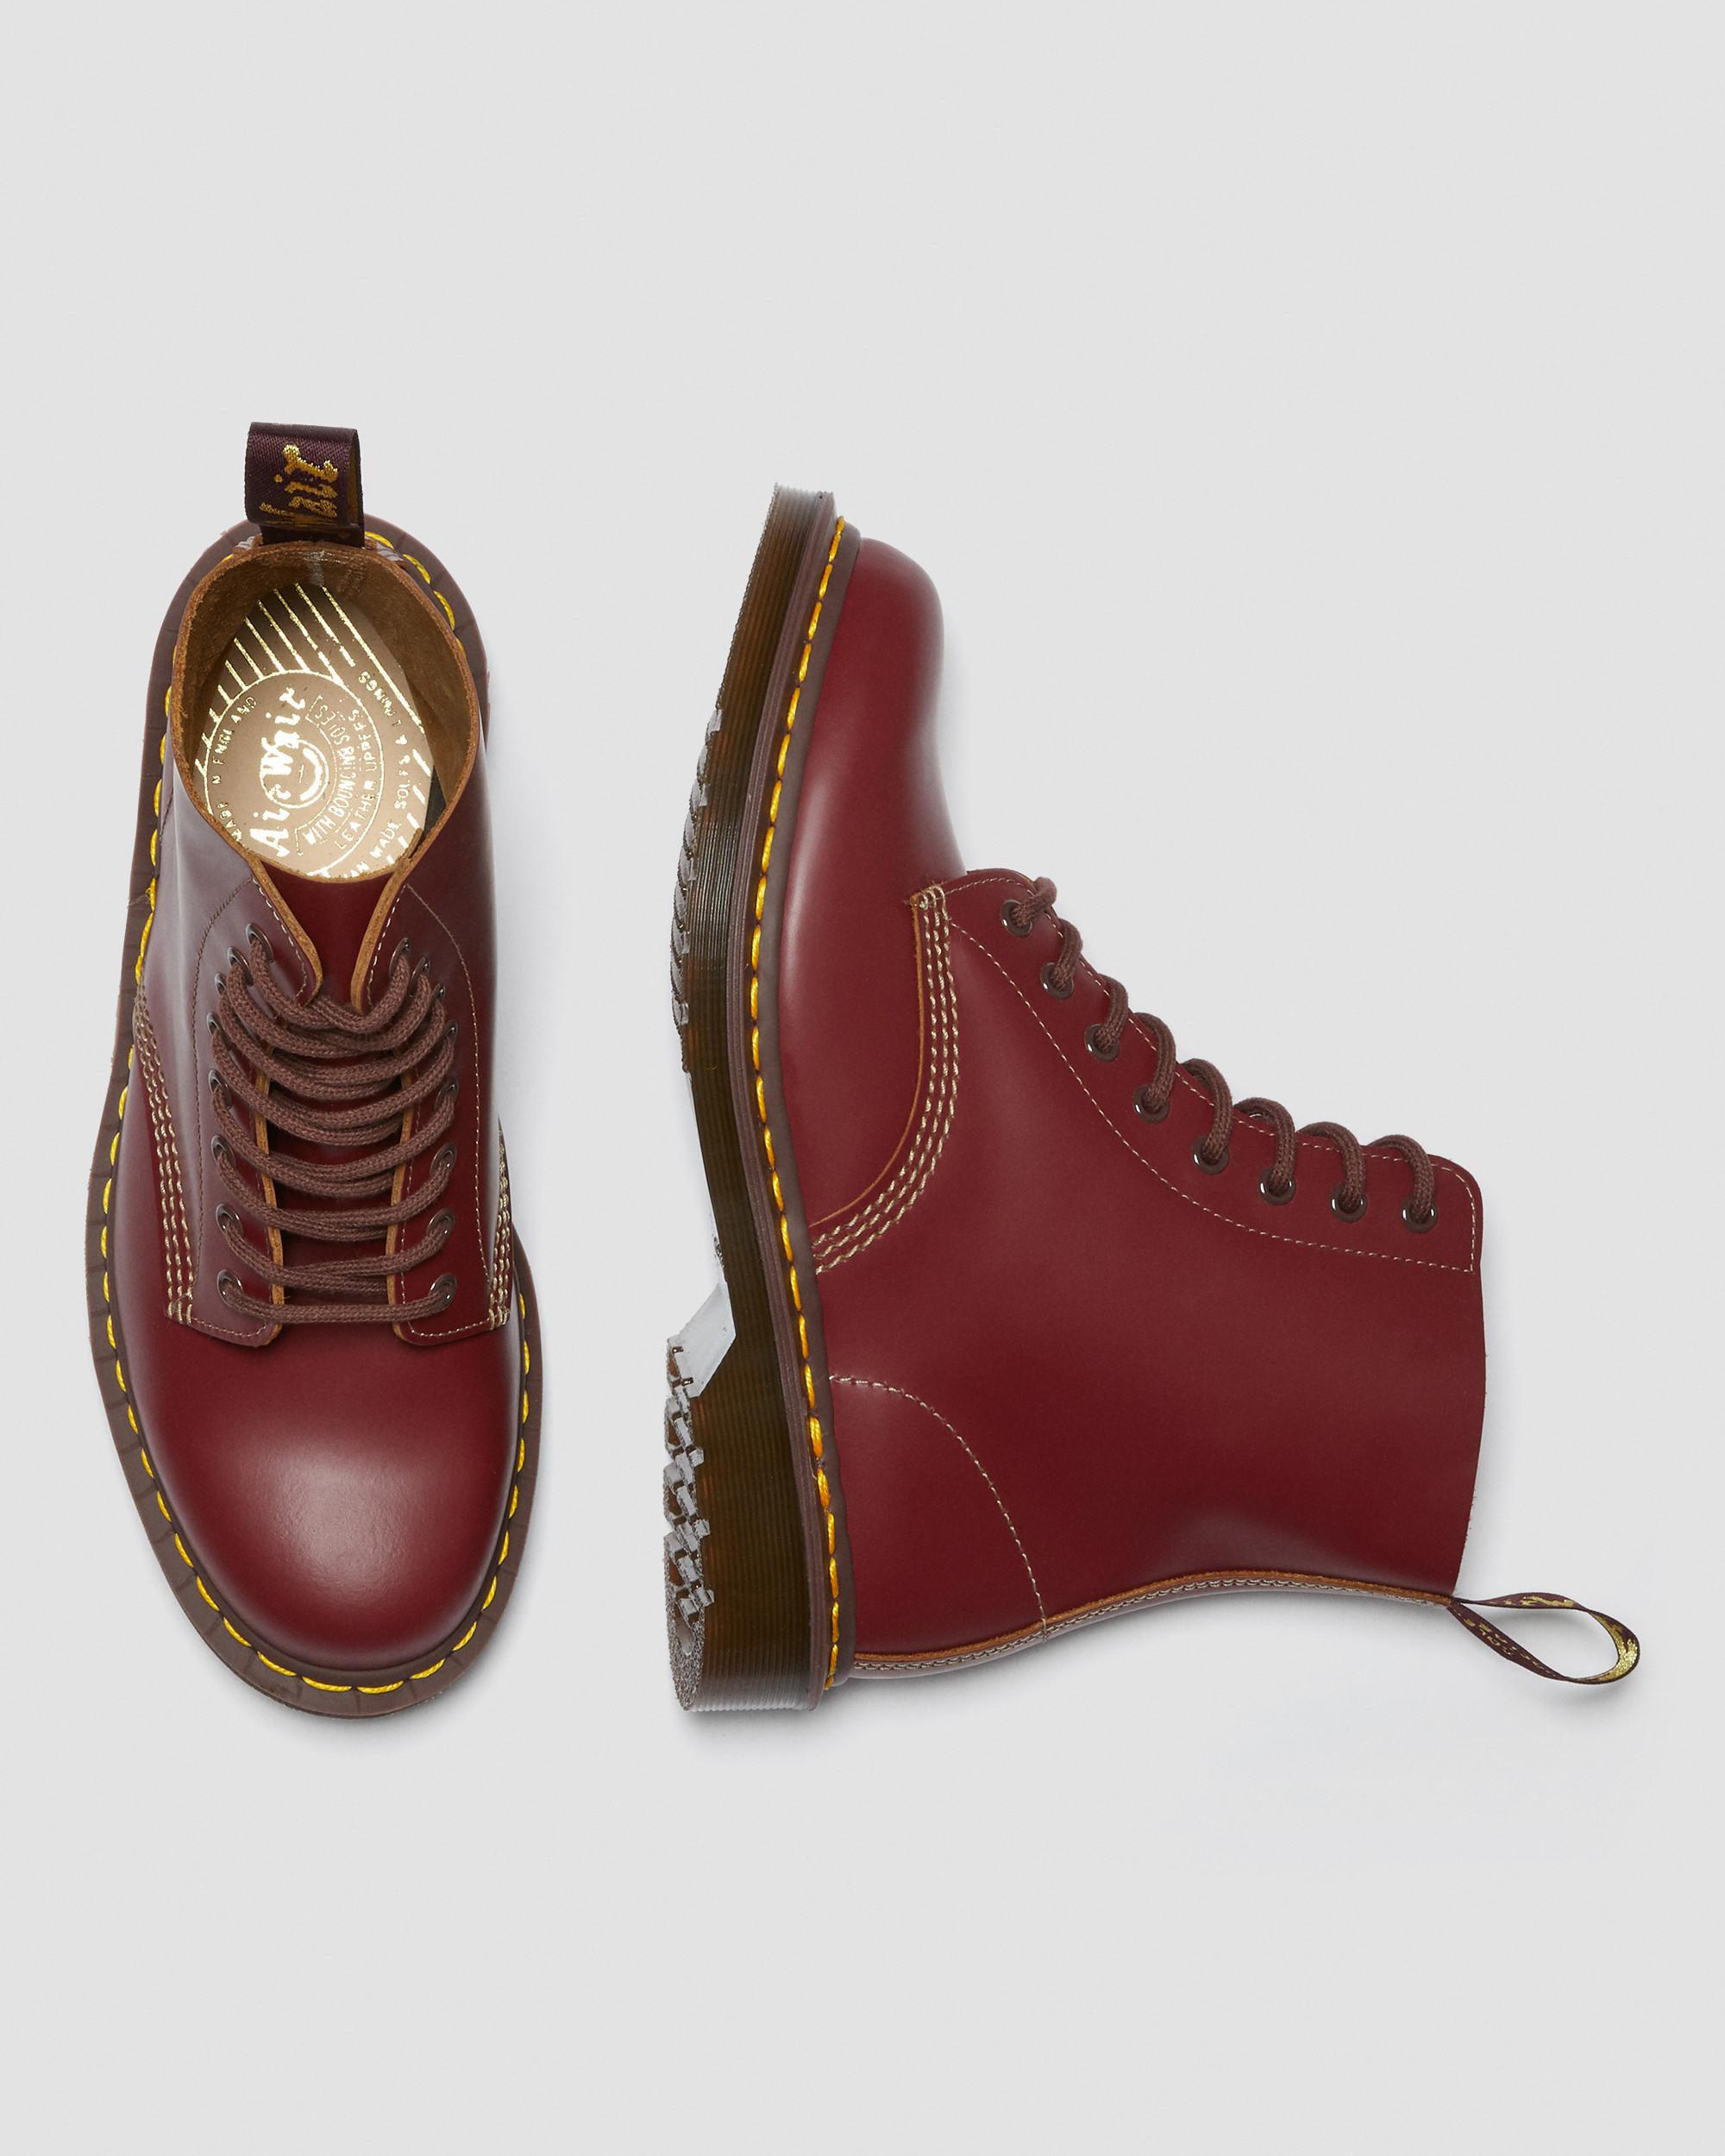 Винтажные ботинки 1460 Made in England на шнуровке Dr. Martens – заказать сдоставкой из-за рубежа через онлайн-сервис «CDEK.Shopping»